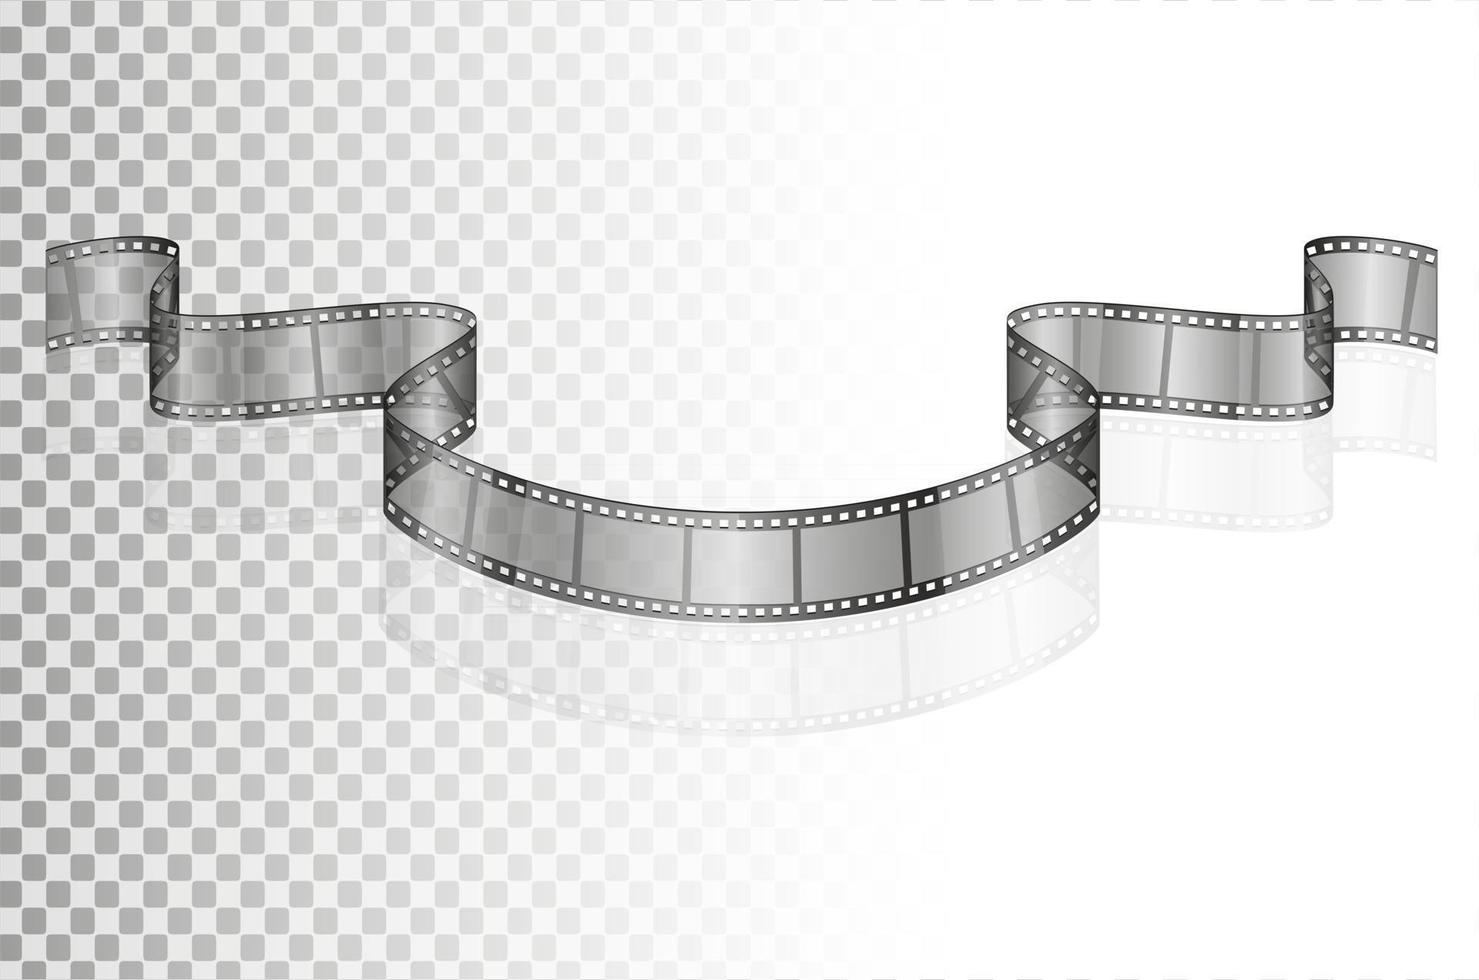 bioscoop film transparante voorraad vectorillustratie geïsoleerd op een witte achtergrond vector